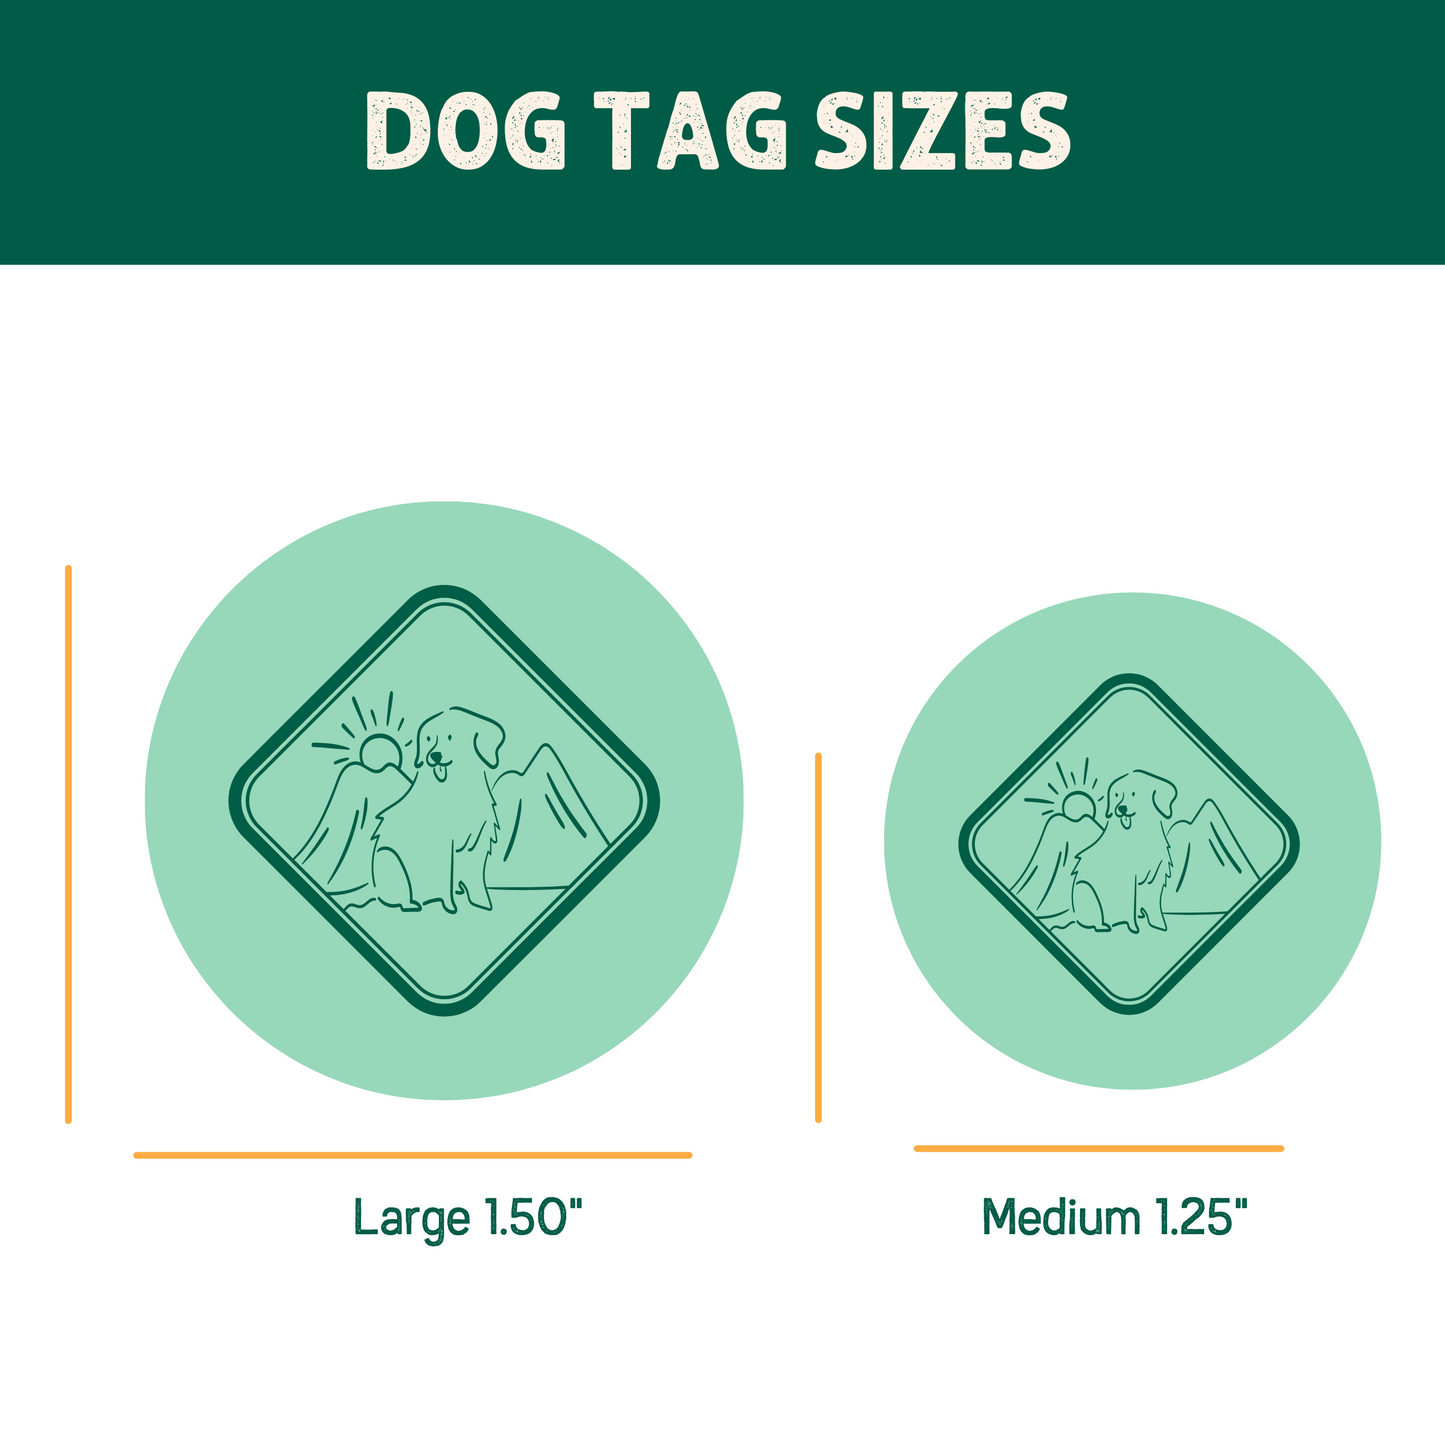 Tahoma Peak Custom Dog ID Tag